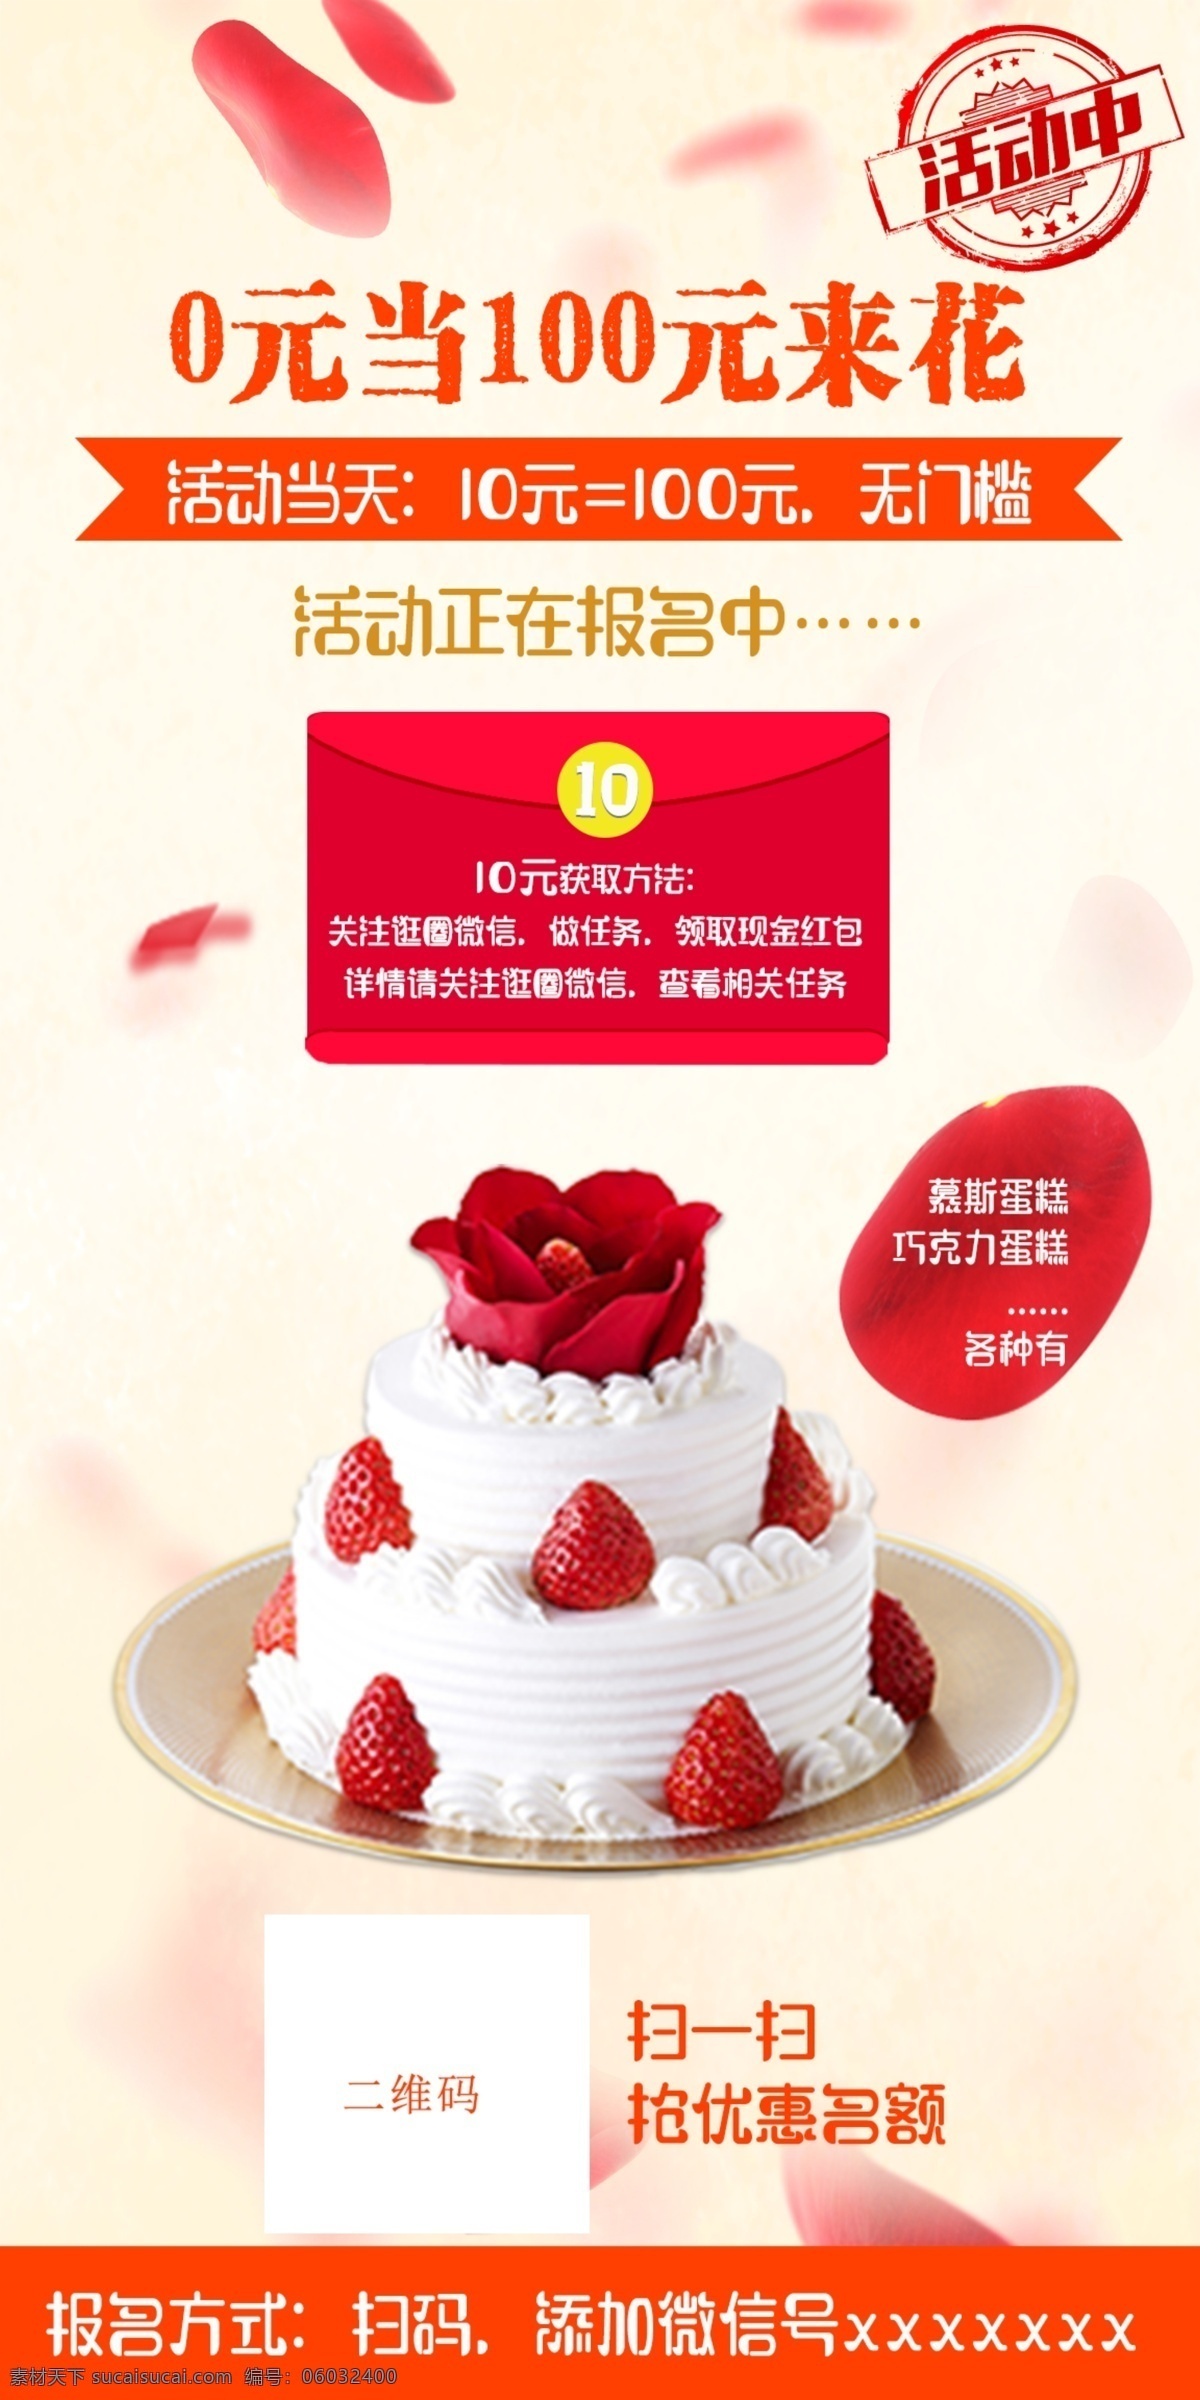 蛋糕活动海报 活动 海报 蛋糕 宣传 红包 白色